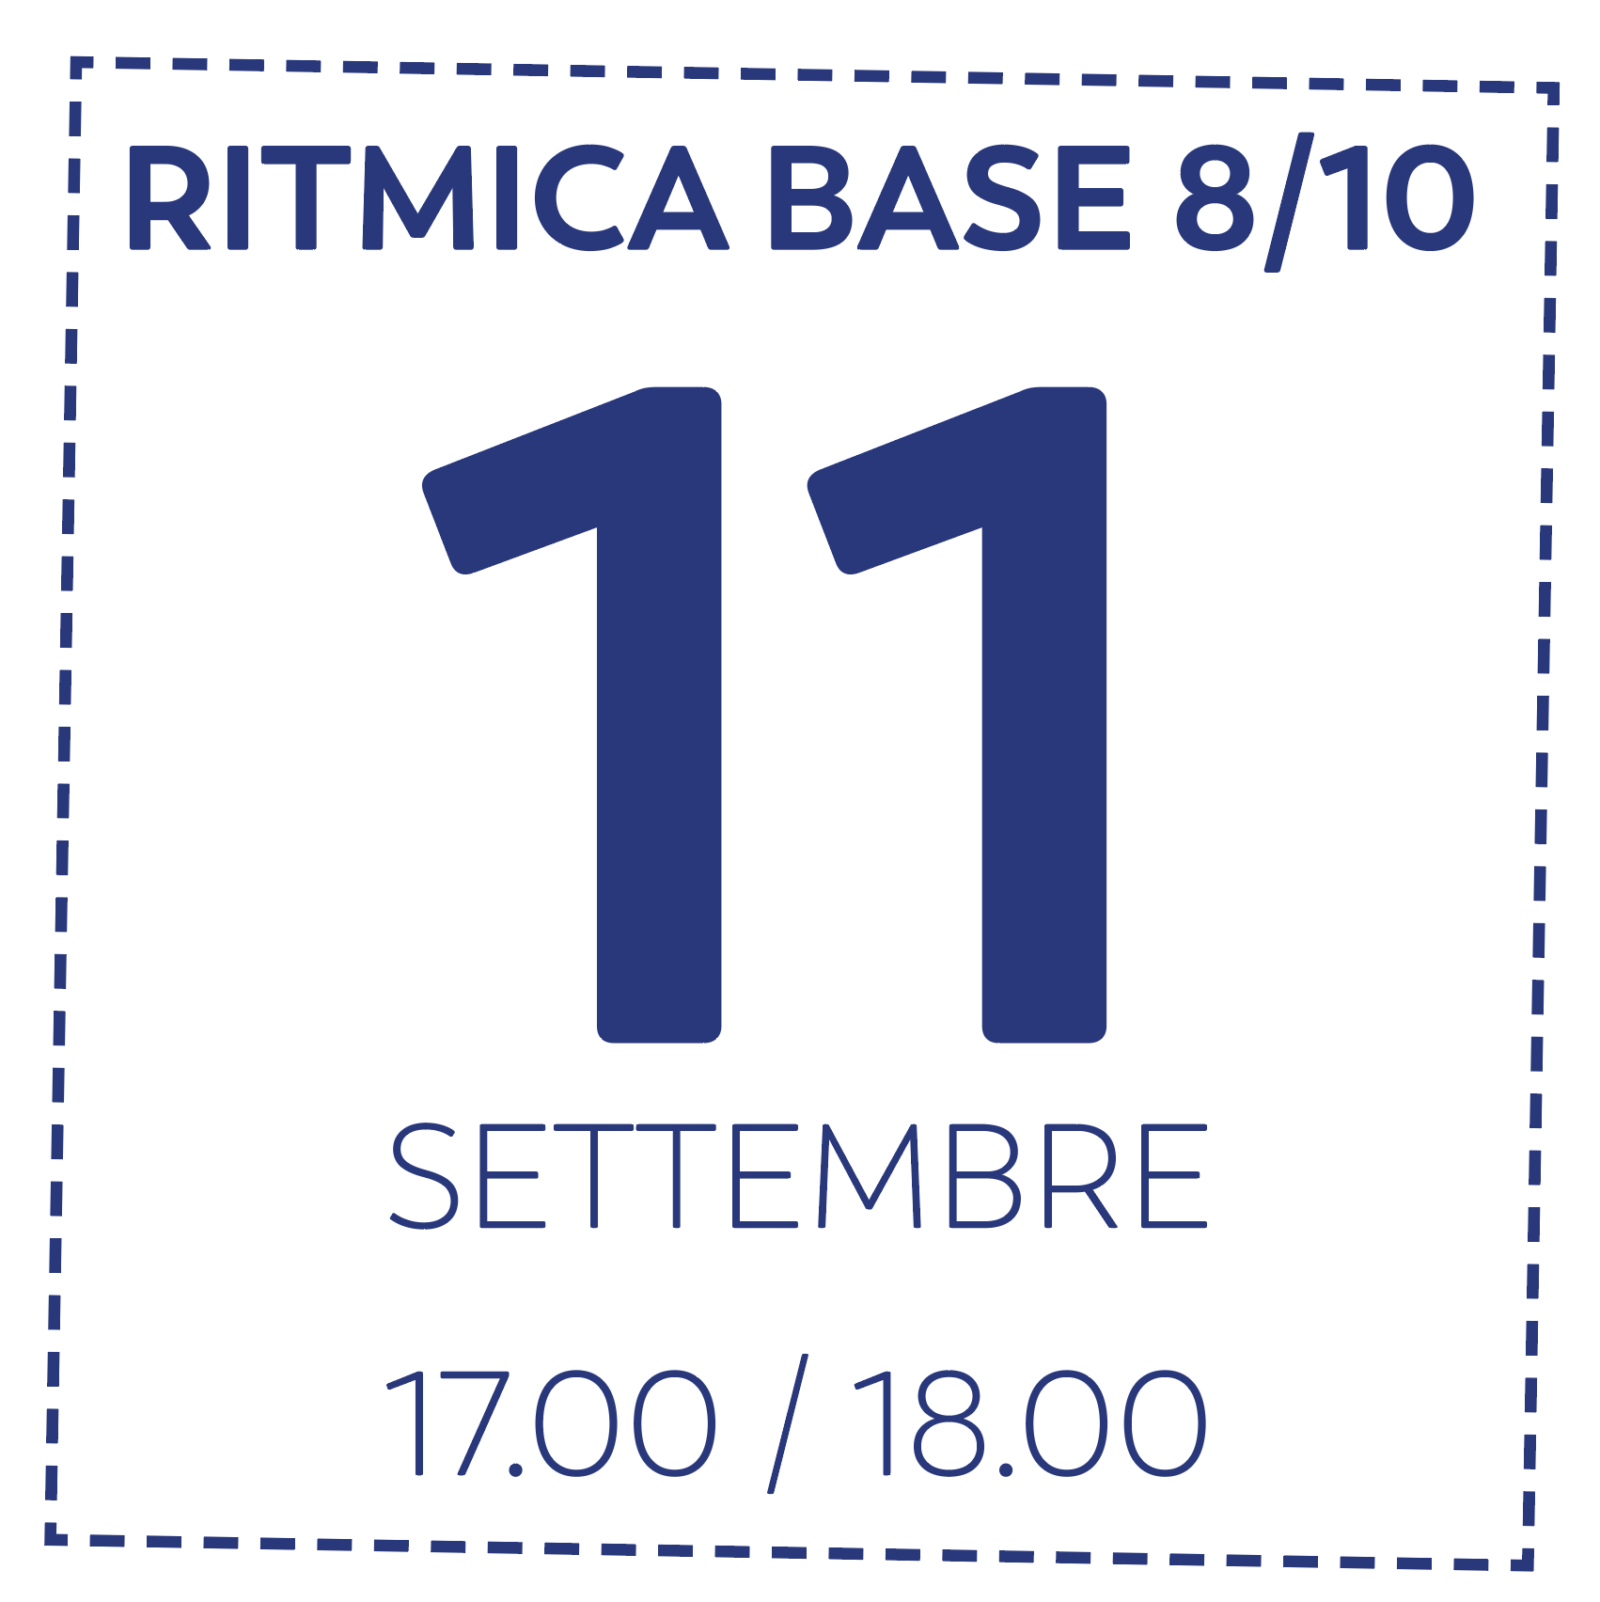 OD RITMICA BASE 8/10 - 11/9